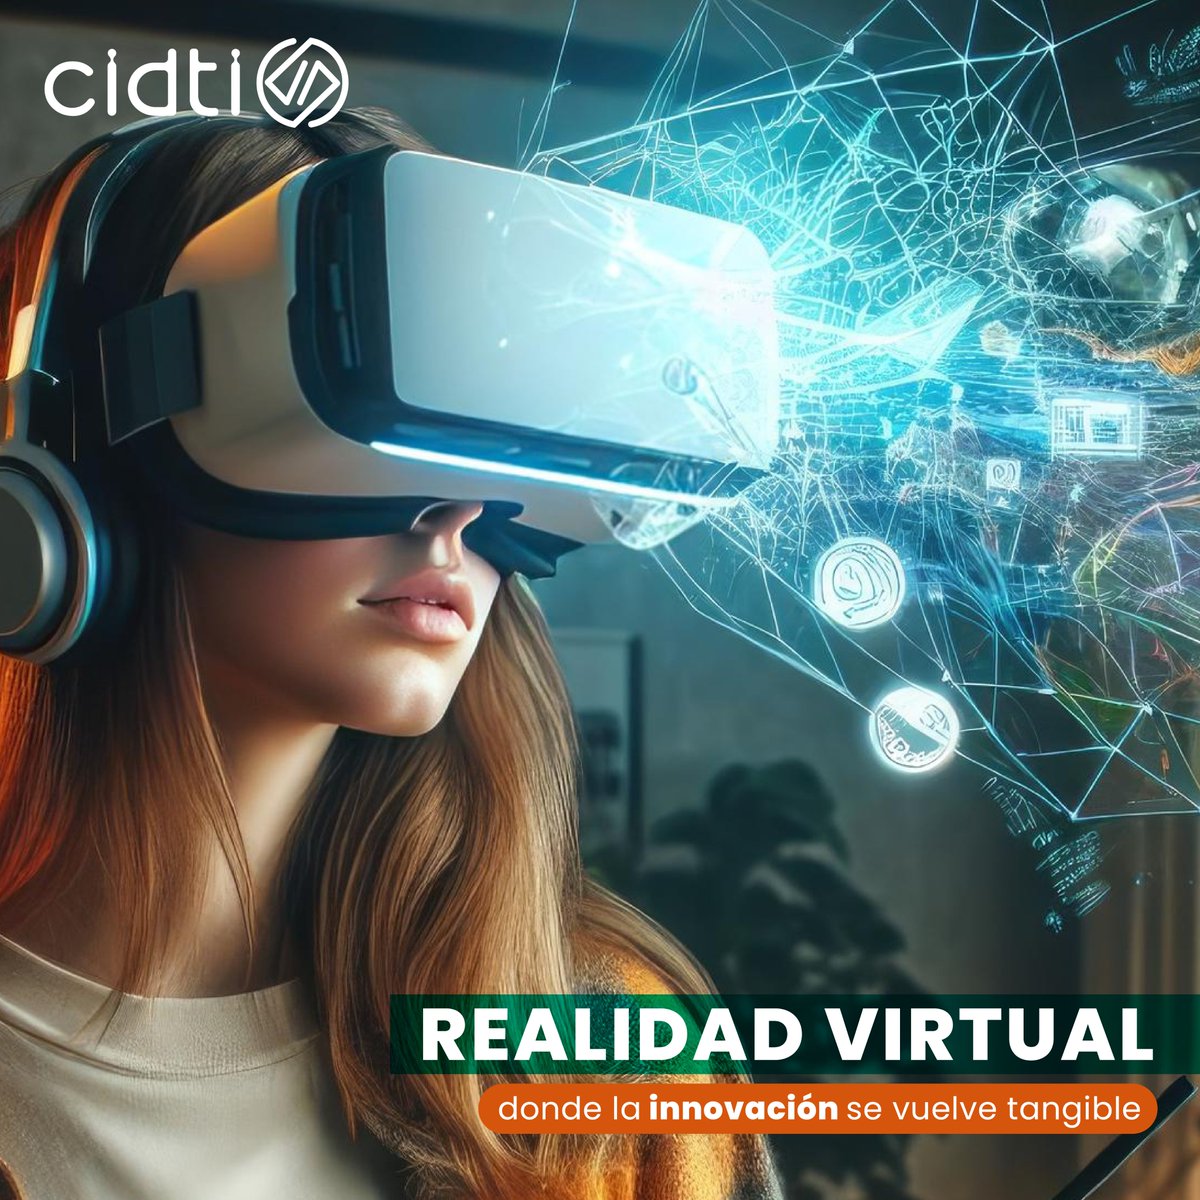 Descubre el potencial de la #RealidadVirtual en tu organización con #Cidti40. Mejora la formación, facilita la colaboración y optimiza procesos. ¡Convierte la #innovación en realidad con nuestro equipo de expertos! 💼🌐 #InnovaciónTecnológica #RV #TransformaciónDigital